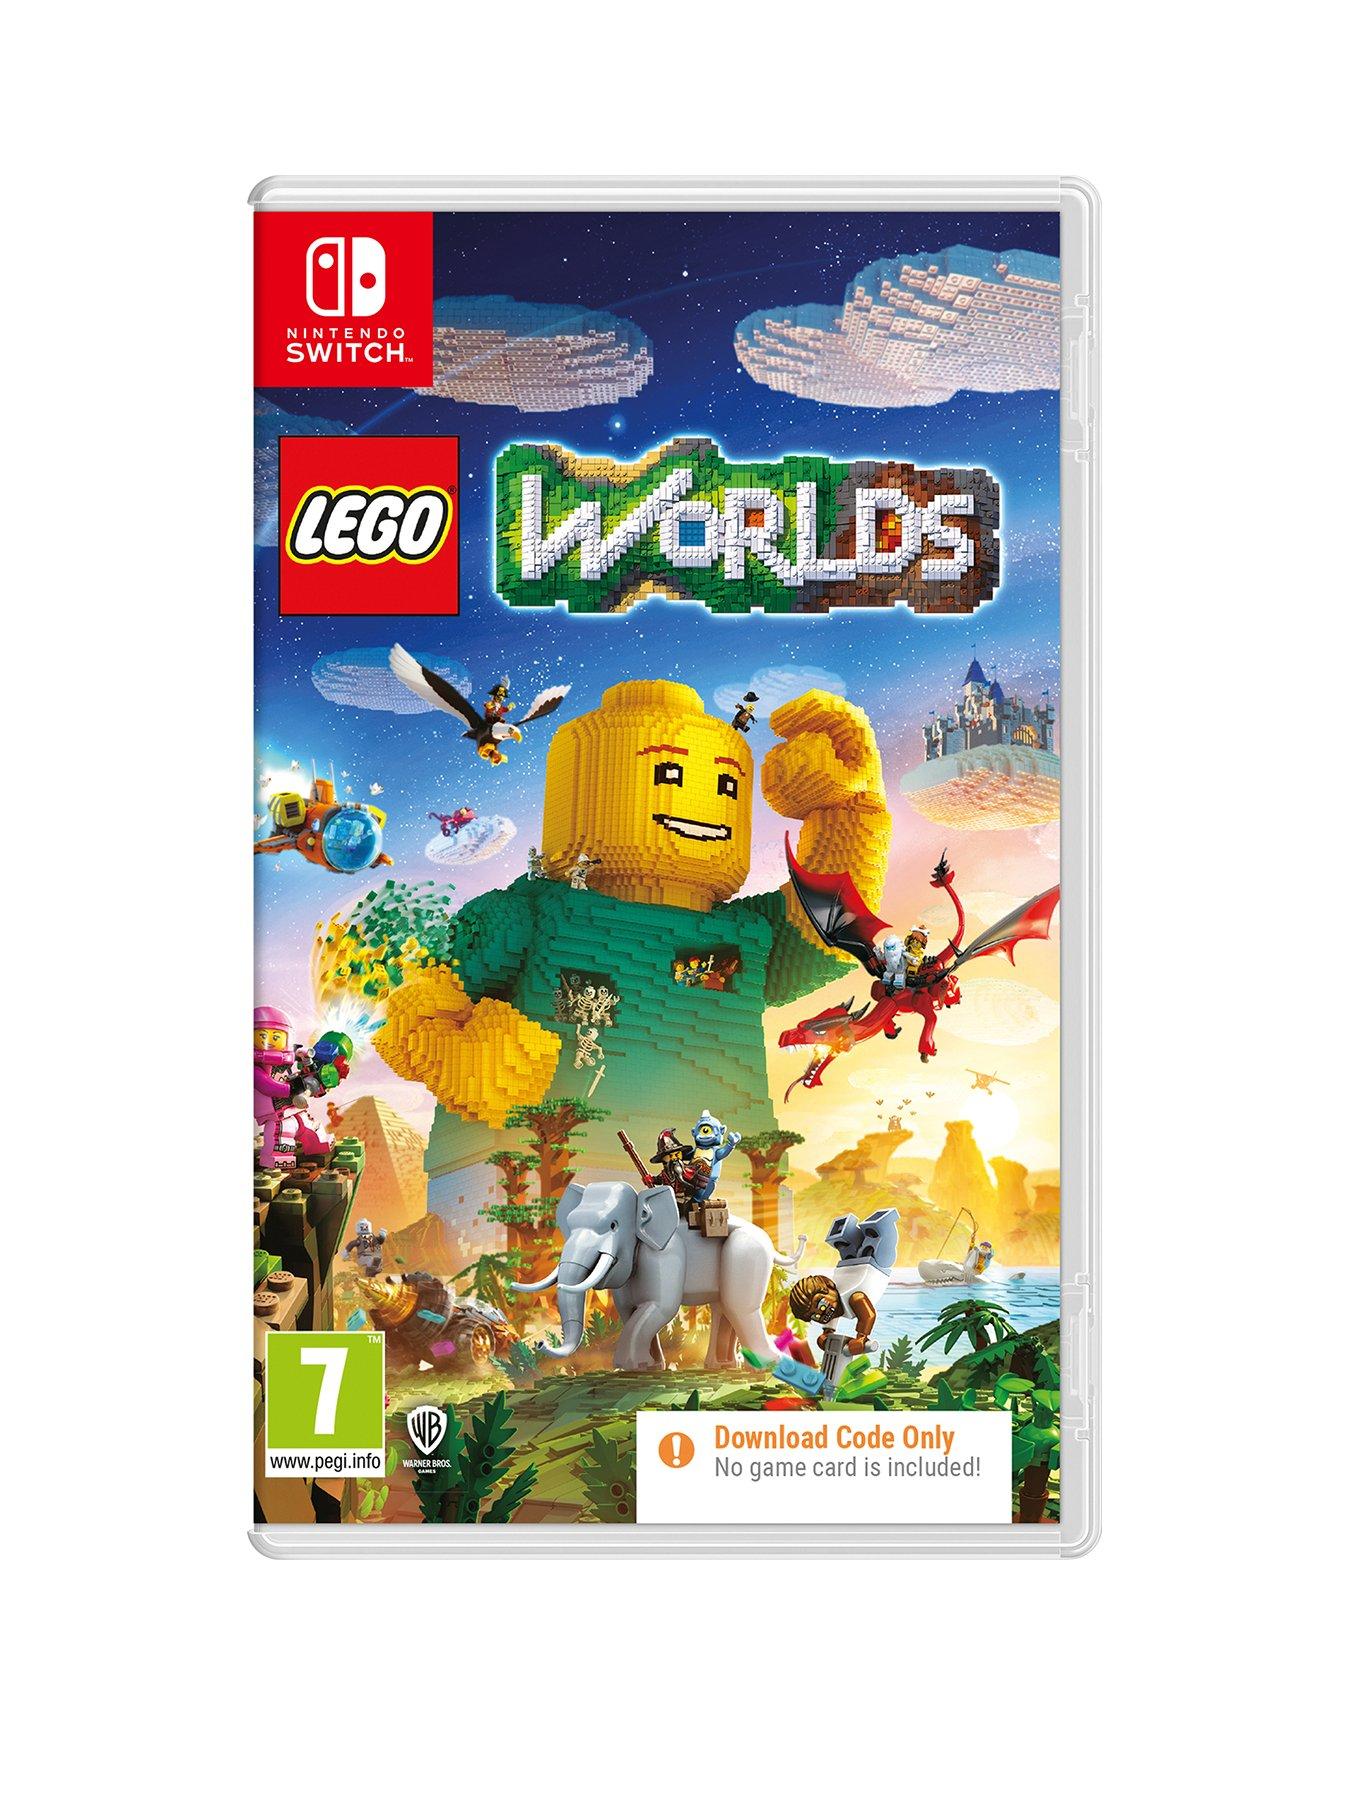 LEGO City Undercover Nintendo Switch (code de téléchargement)